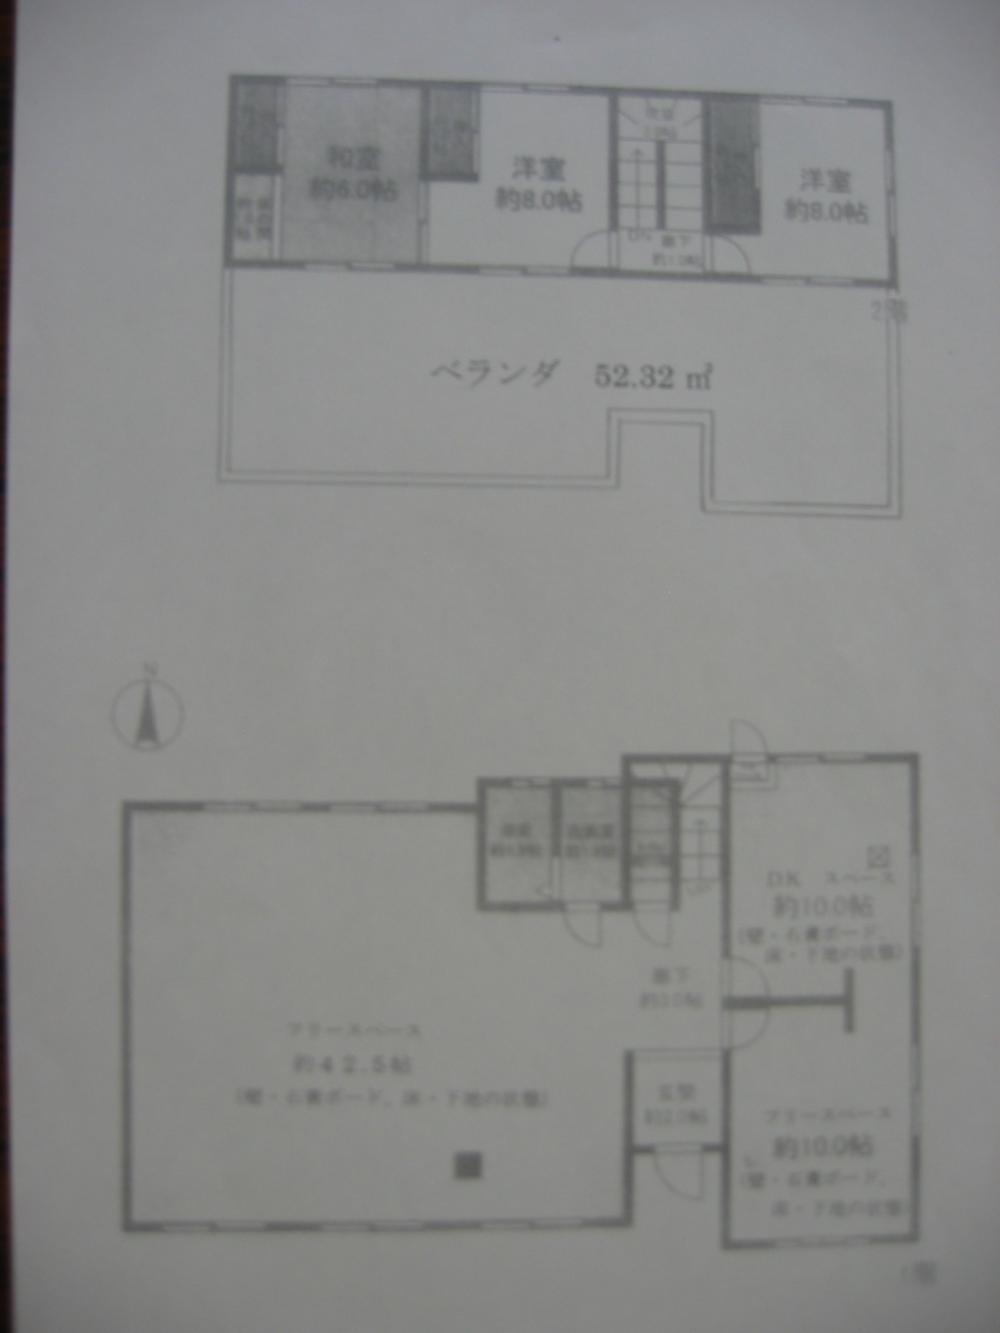 Floor plan. 12.8 million yen, 5DK, Land area 310.39 sq m , Building area 147.56 sq m